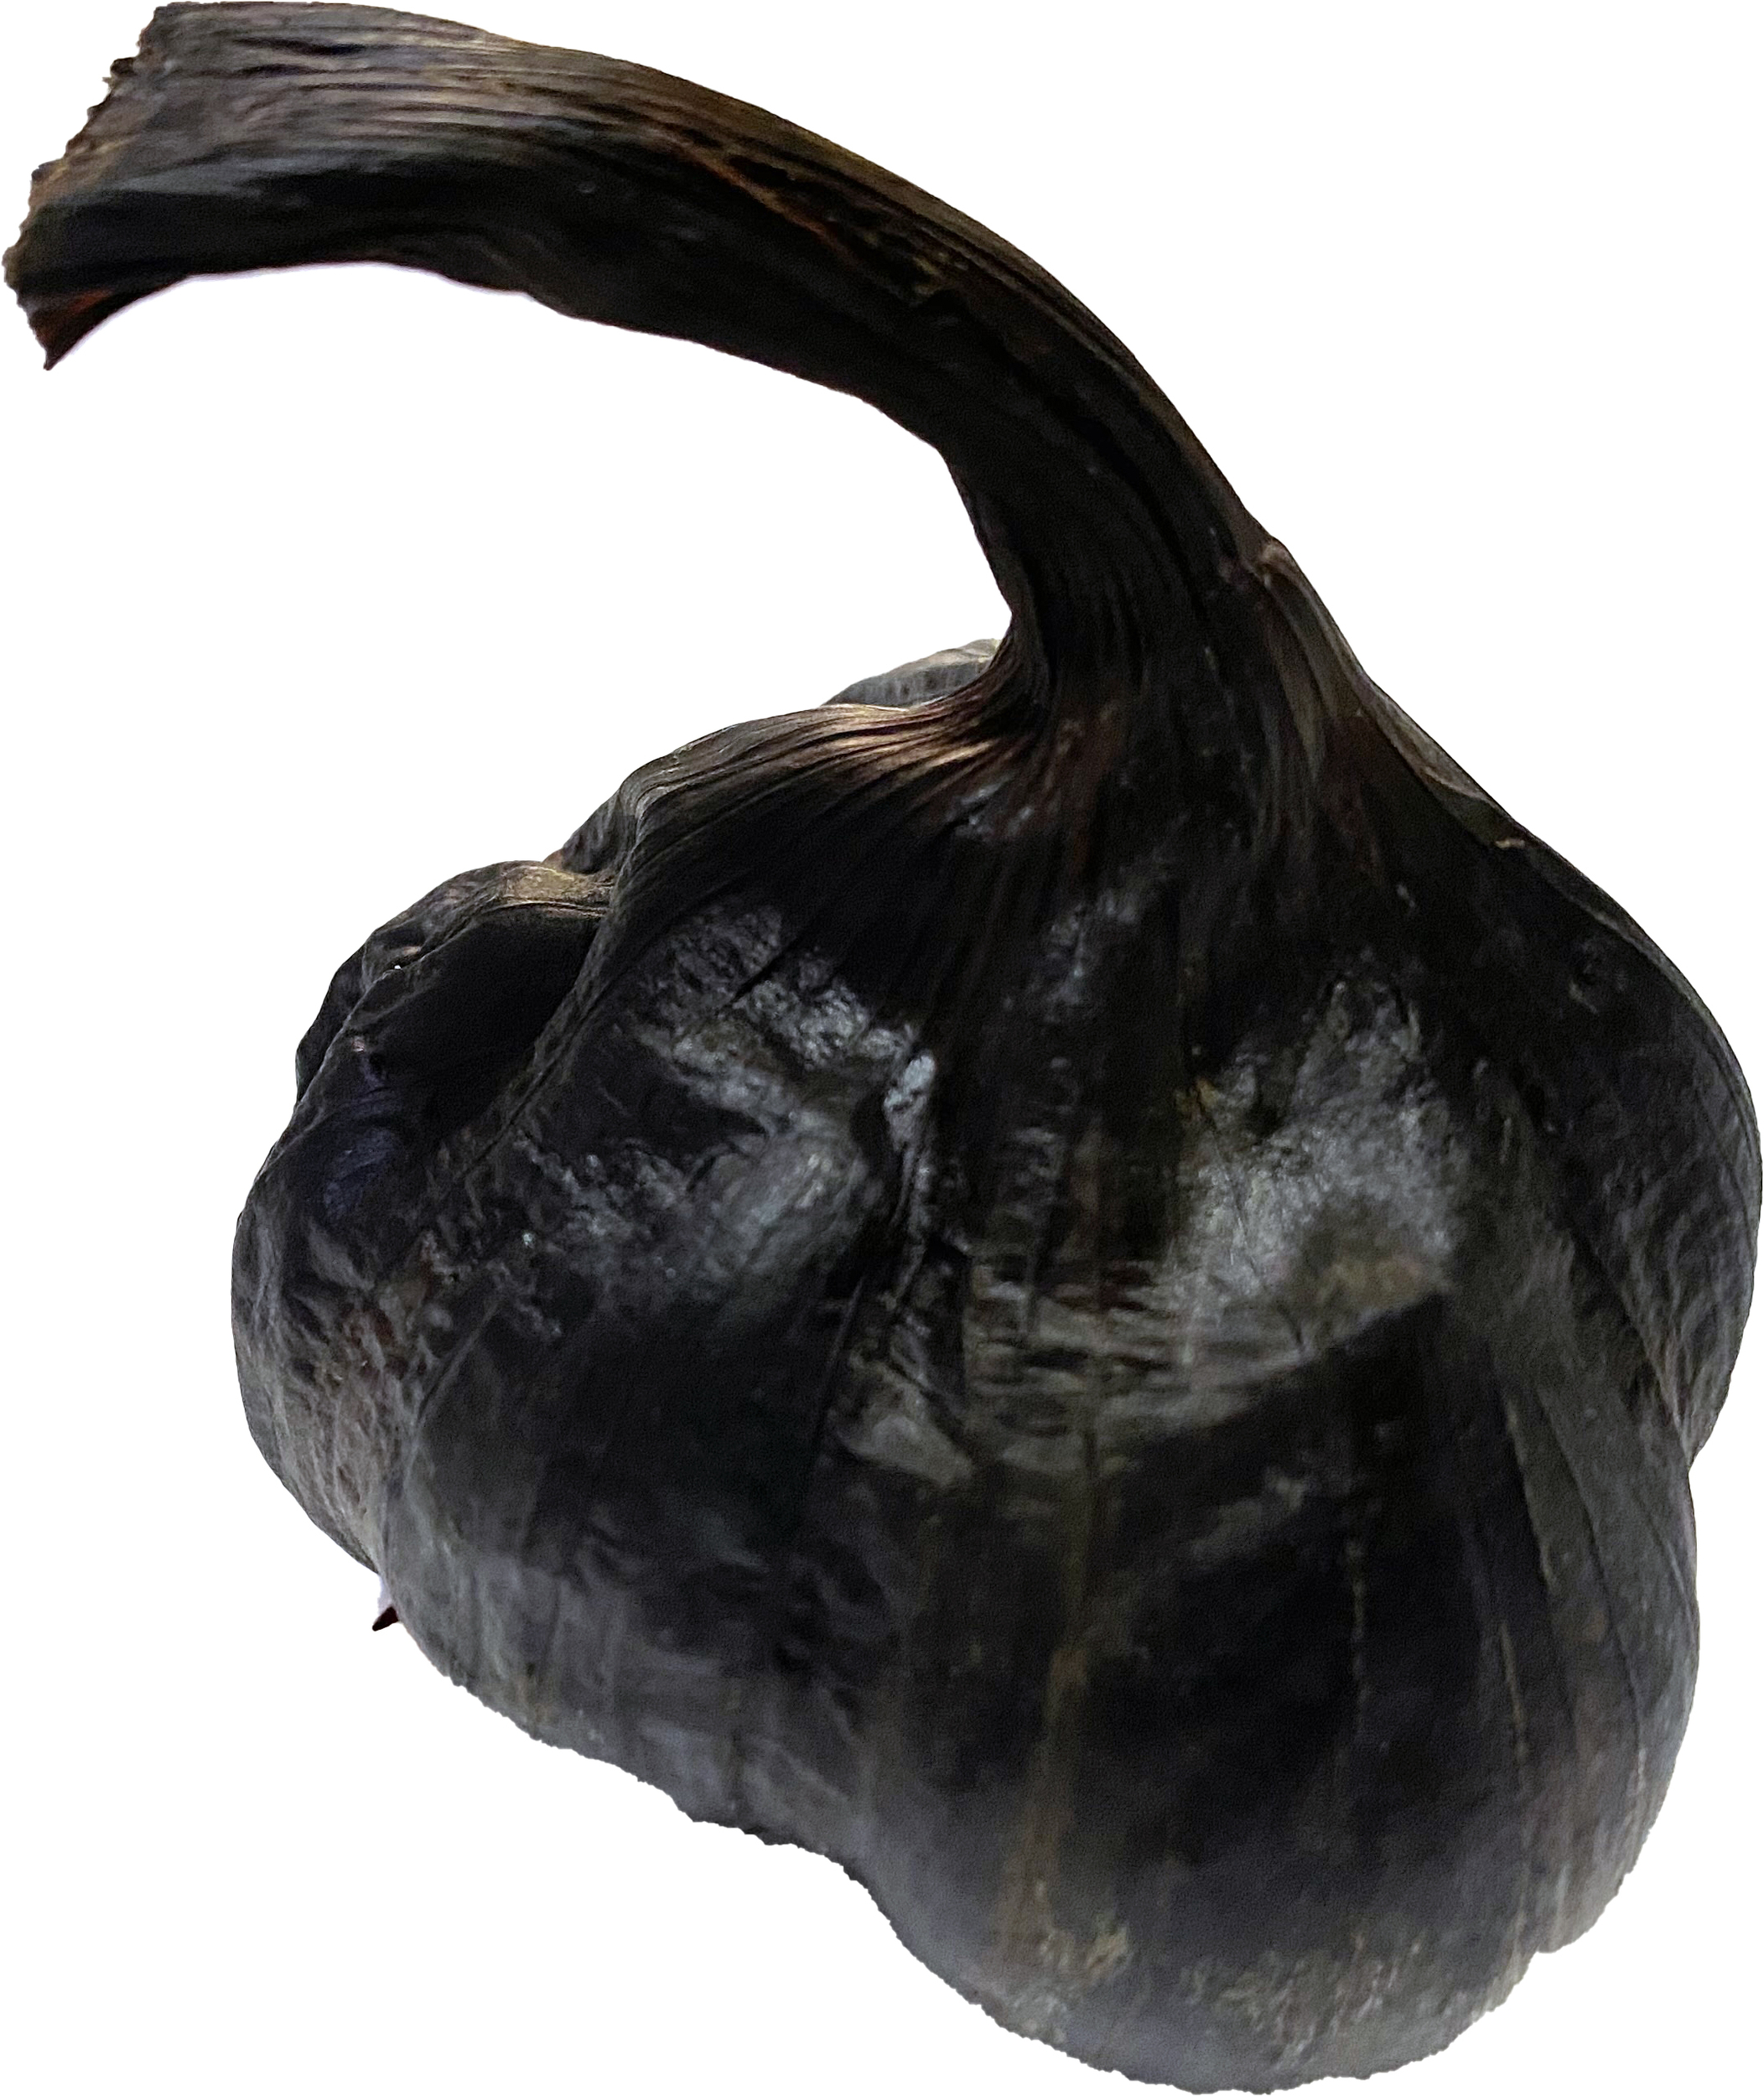 tete d ail noir francais - french black garlic